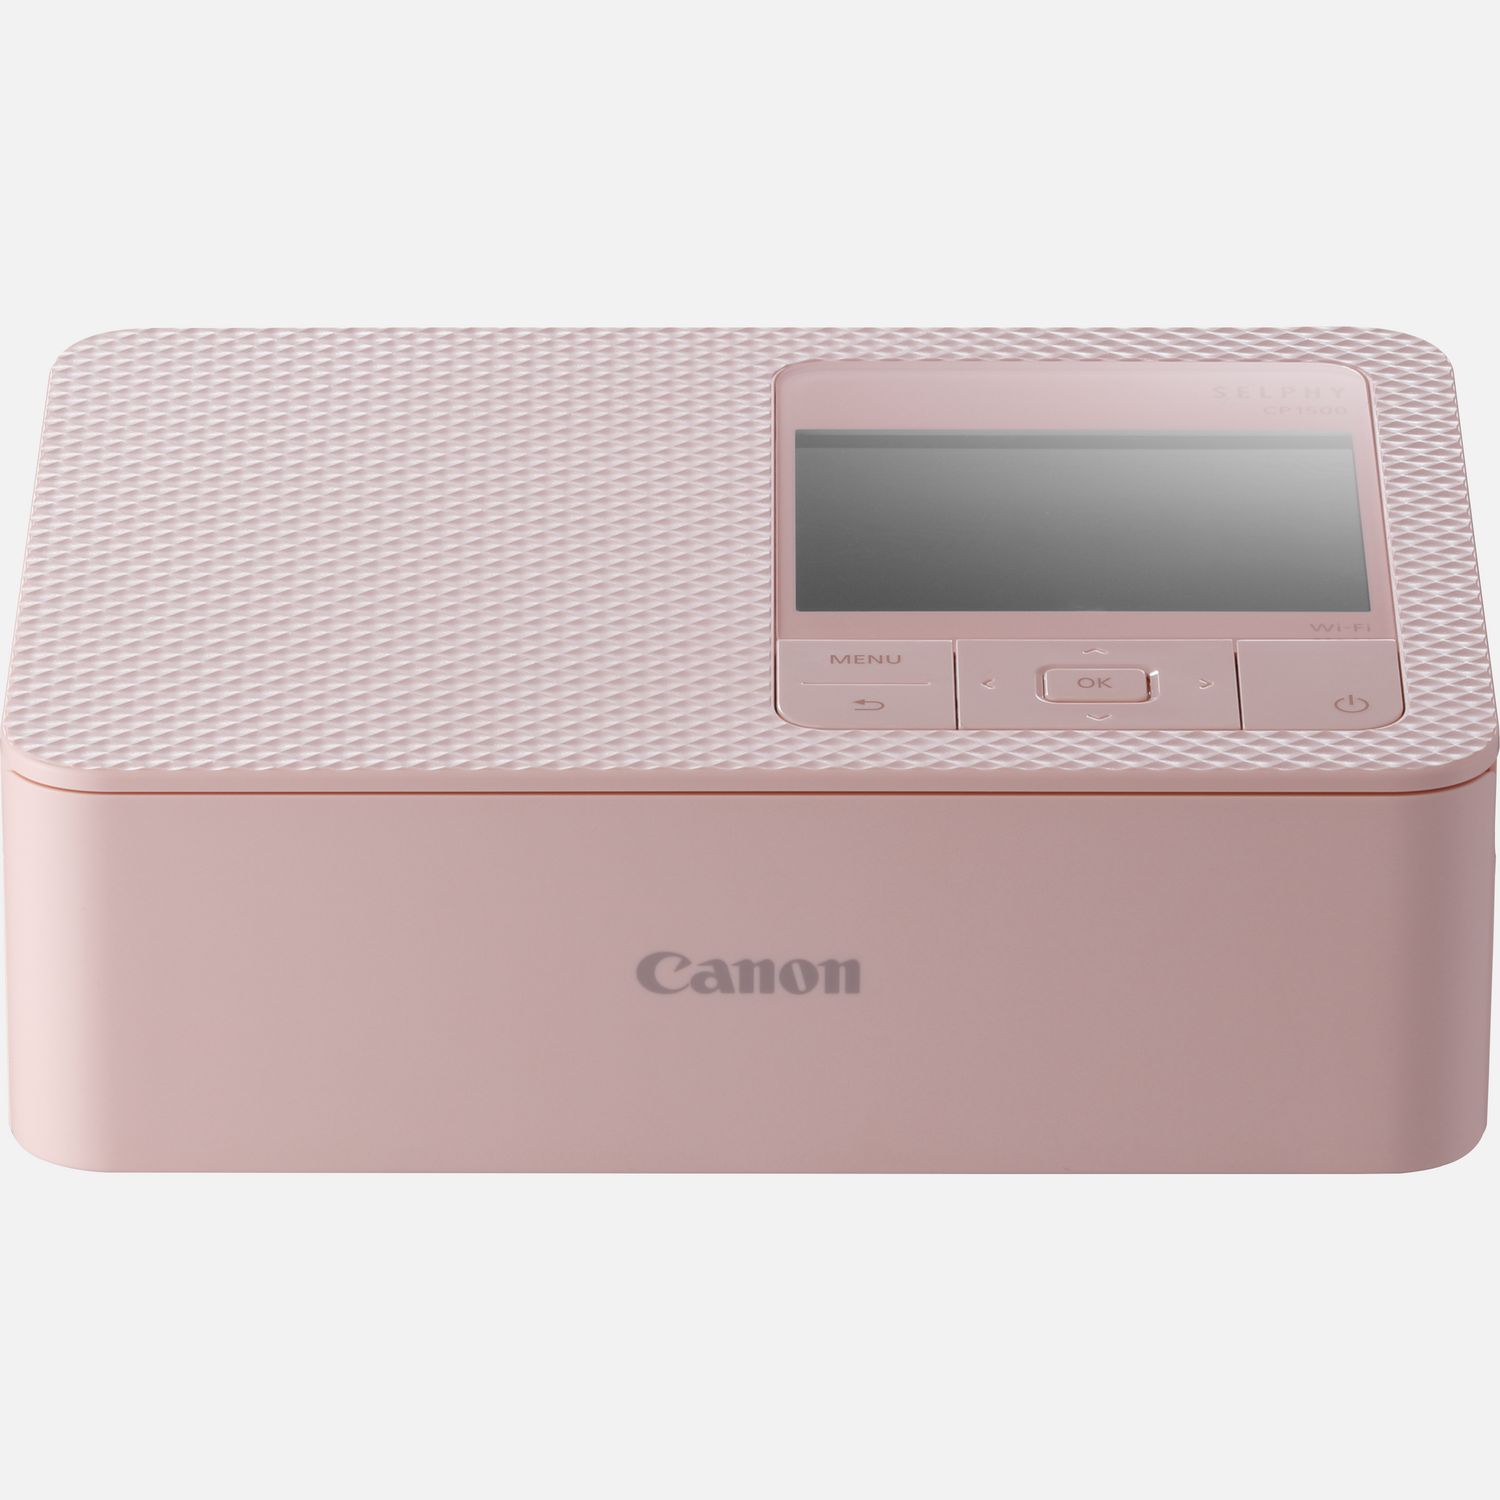 Portable Printers — Canon UK Store